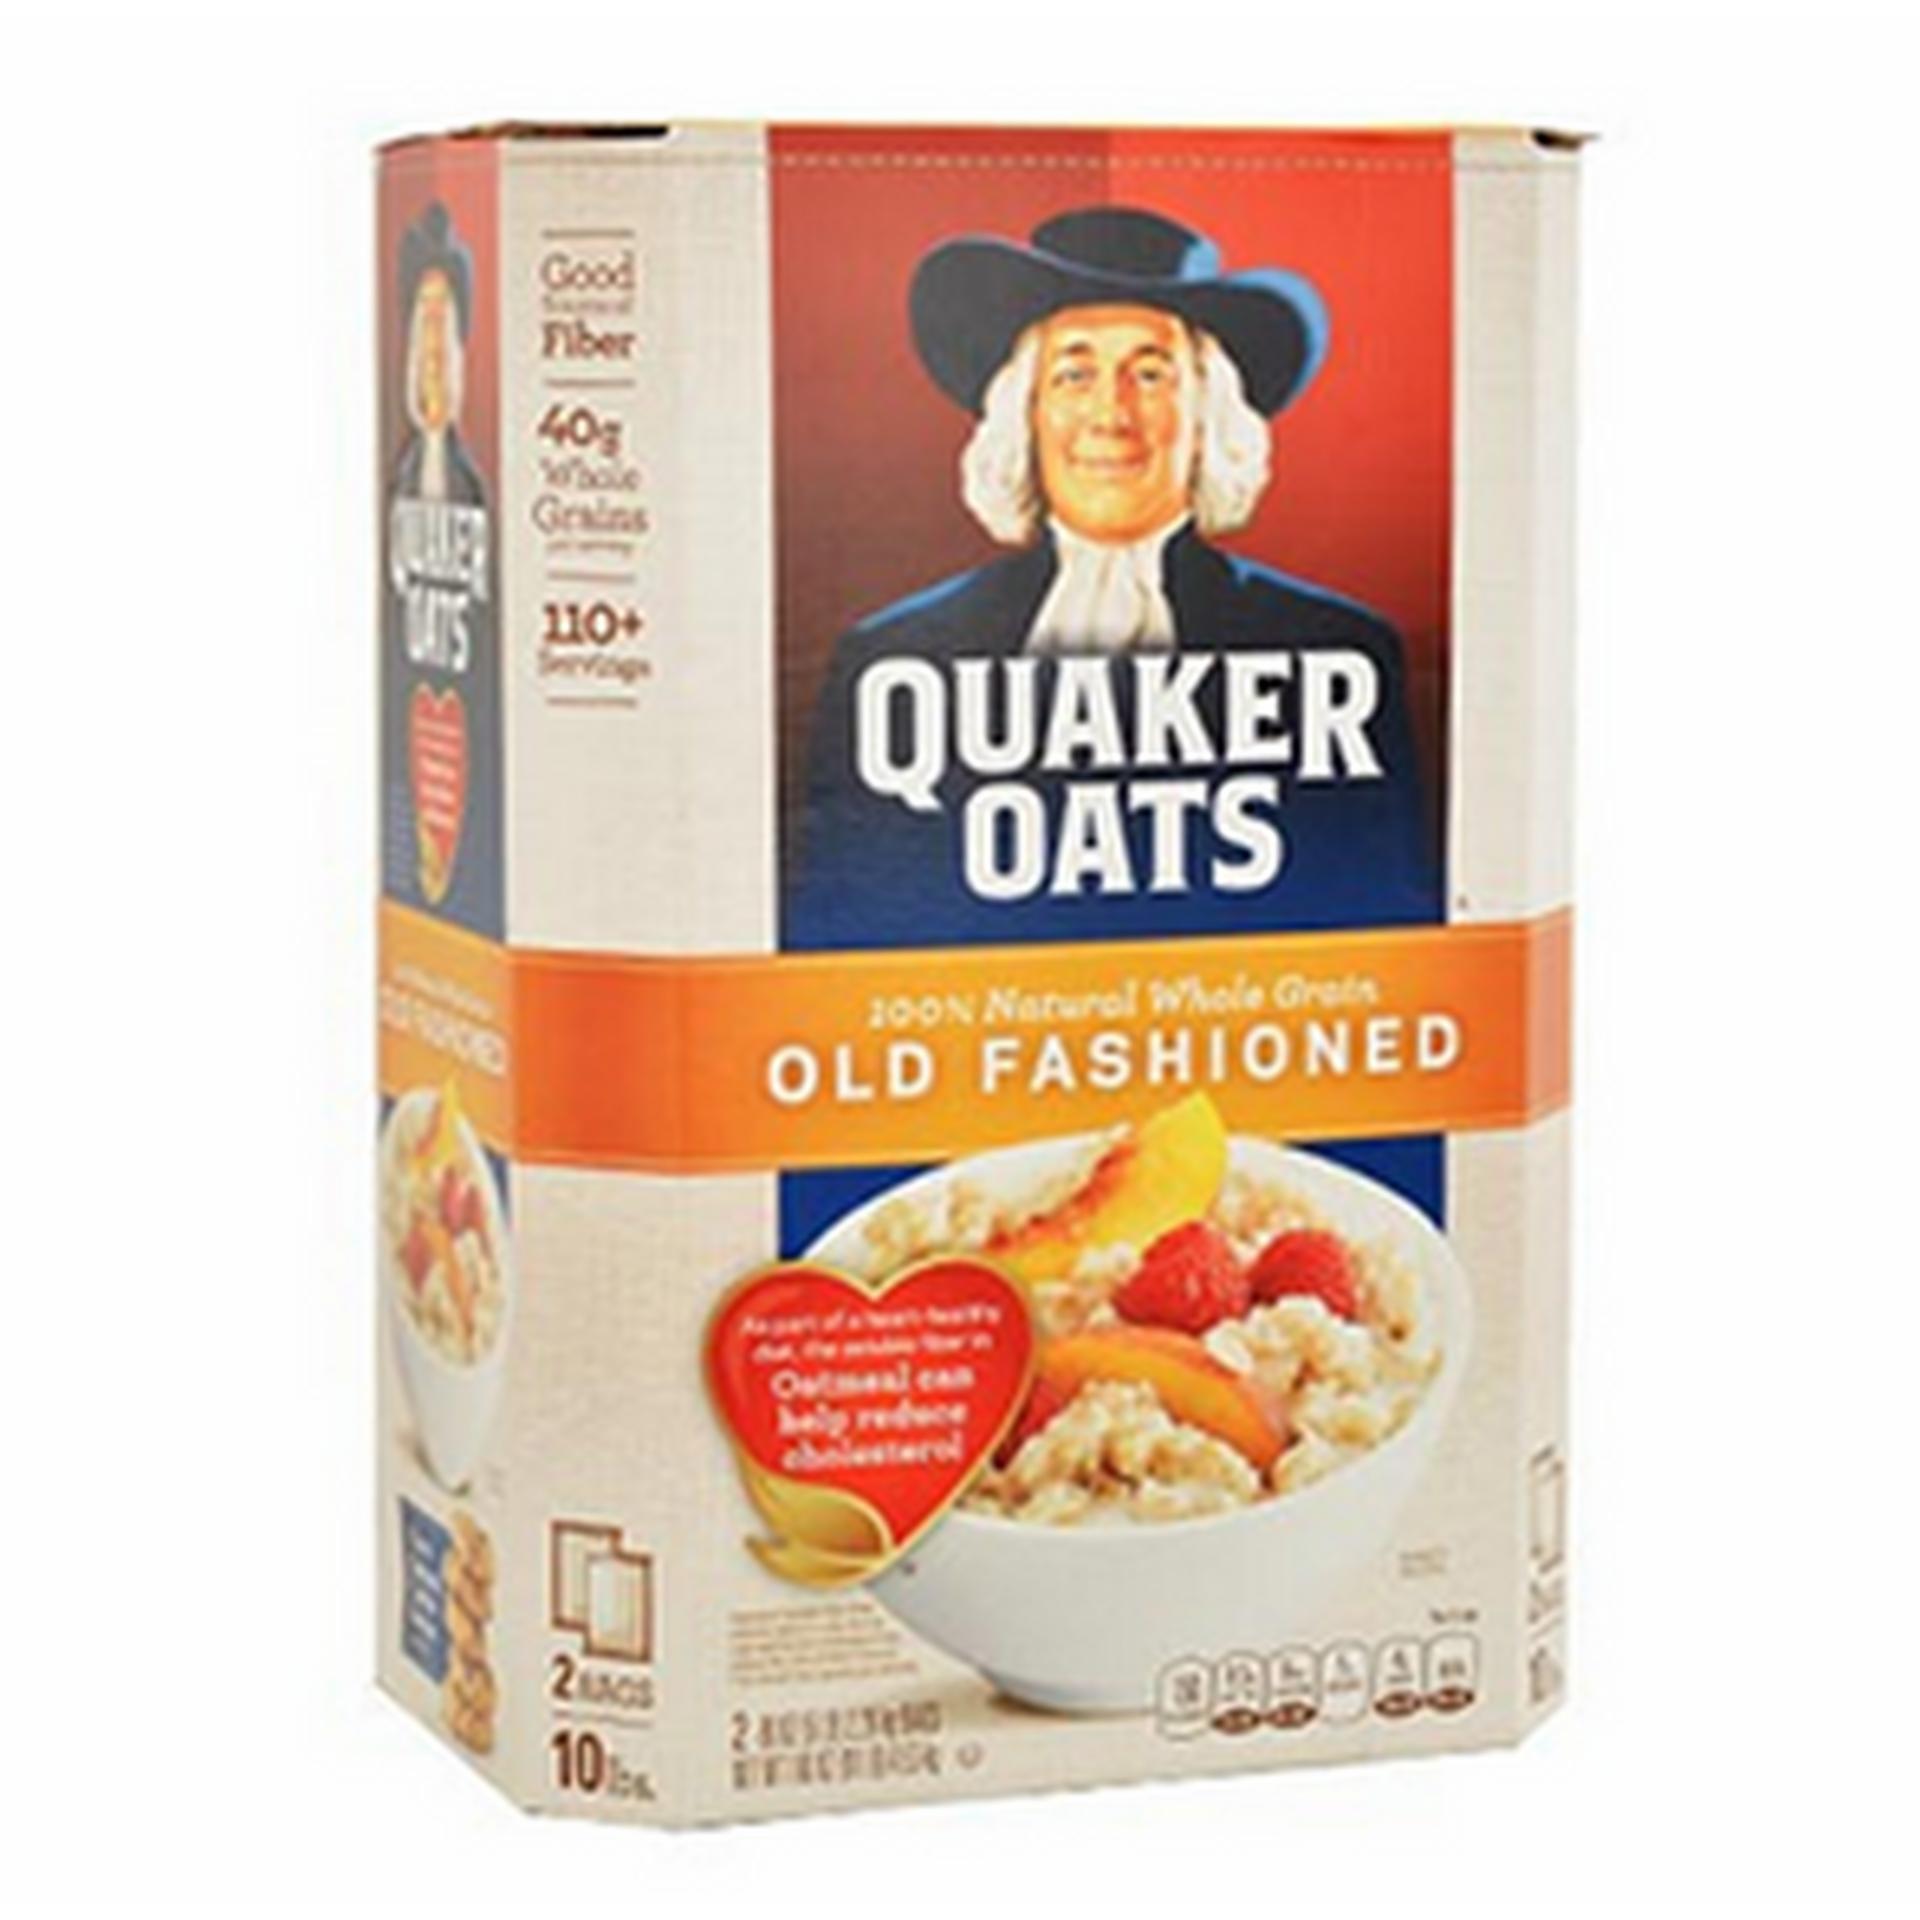 Nửa thùng yến mạch Quaker oats (dạng cán mỏng) Old fashioned 2.26kg